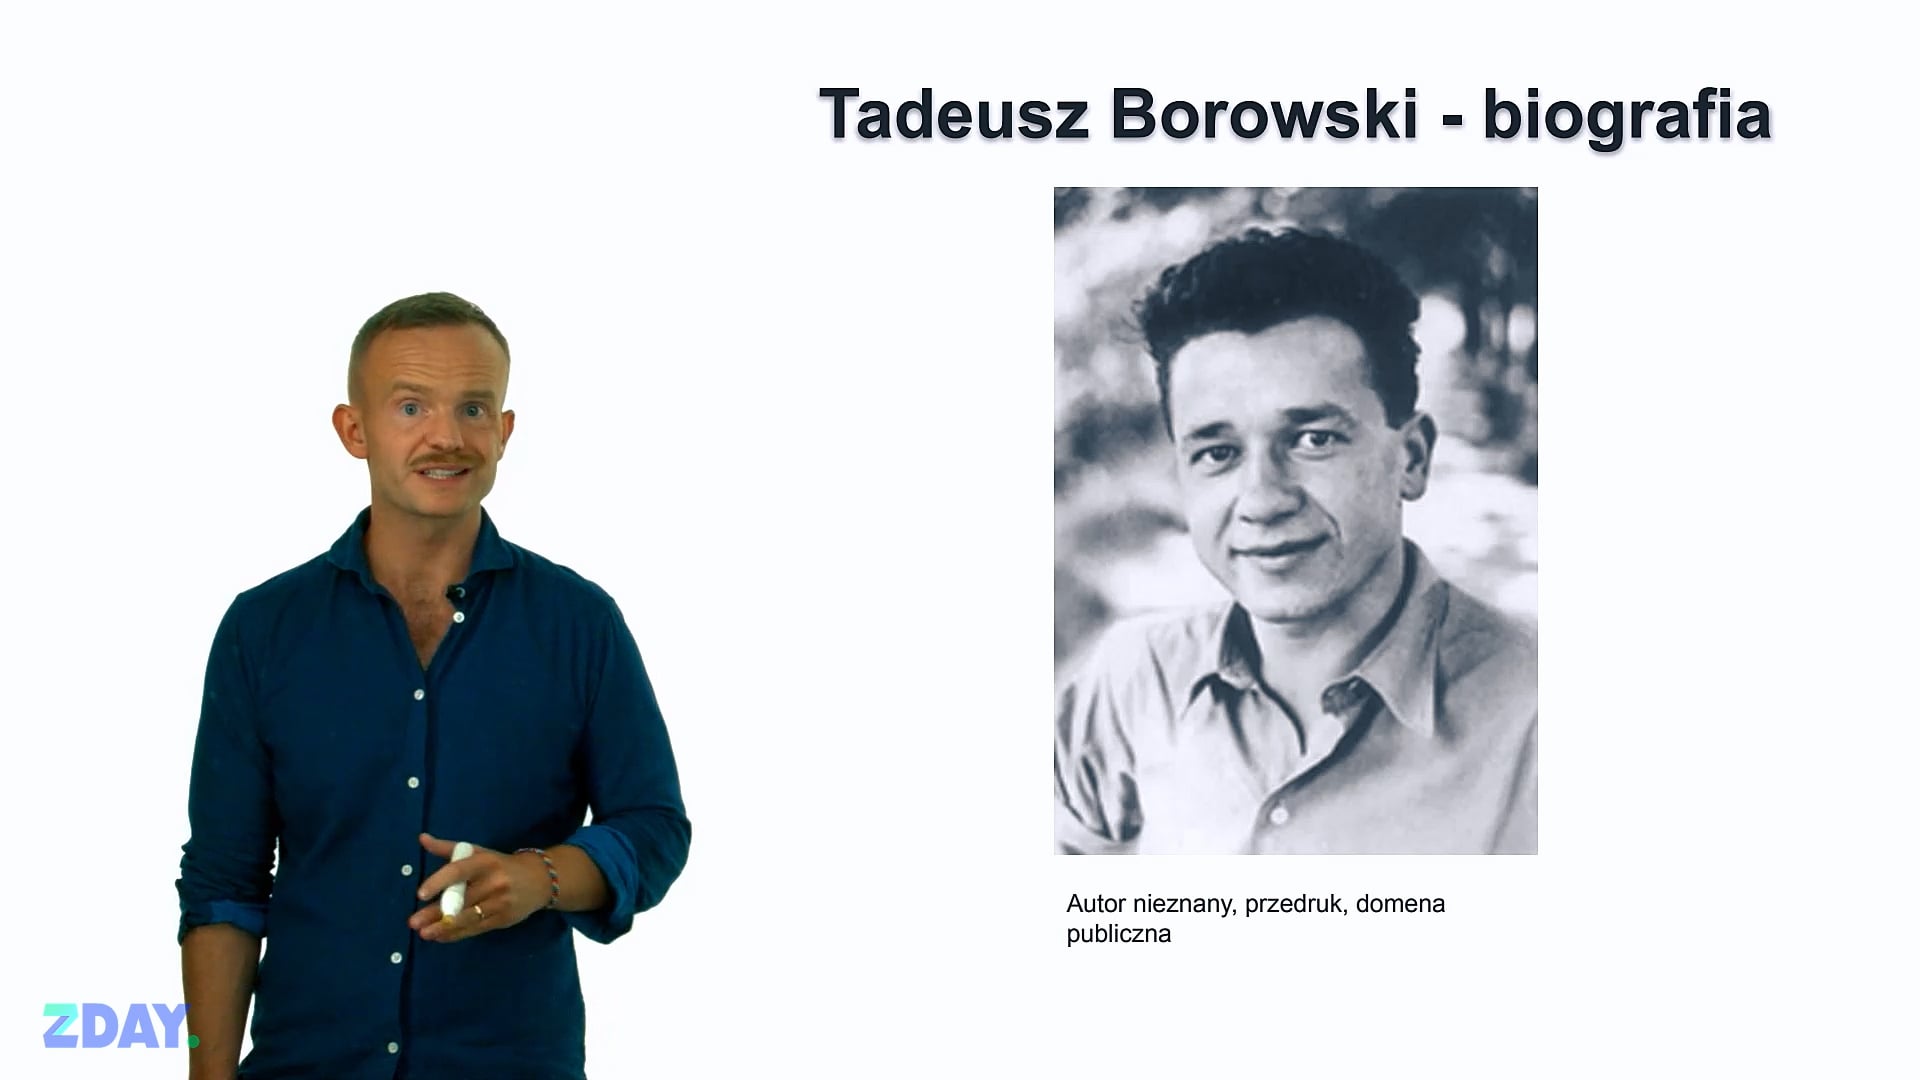 Miniaturka materiału wideo na temat: Tadeusz Borowski – o autorze. Kliknij, aby obejrzeć materiał.